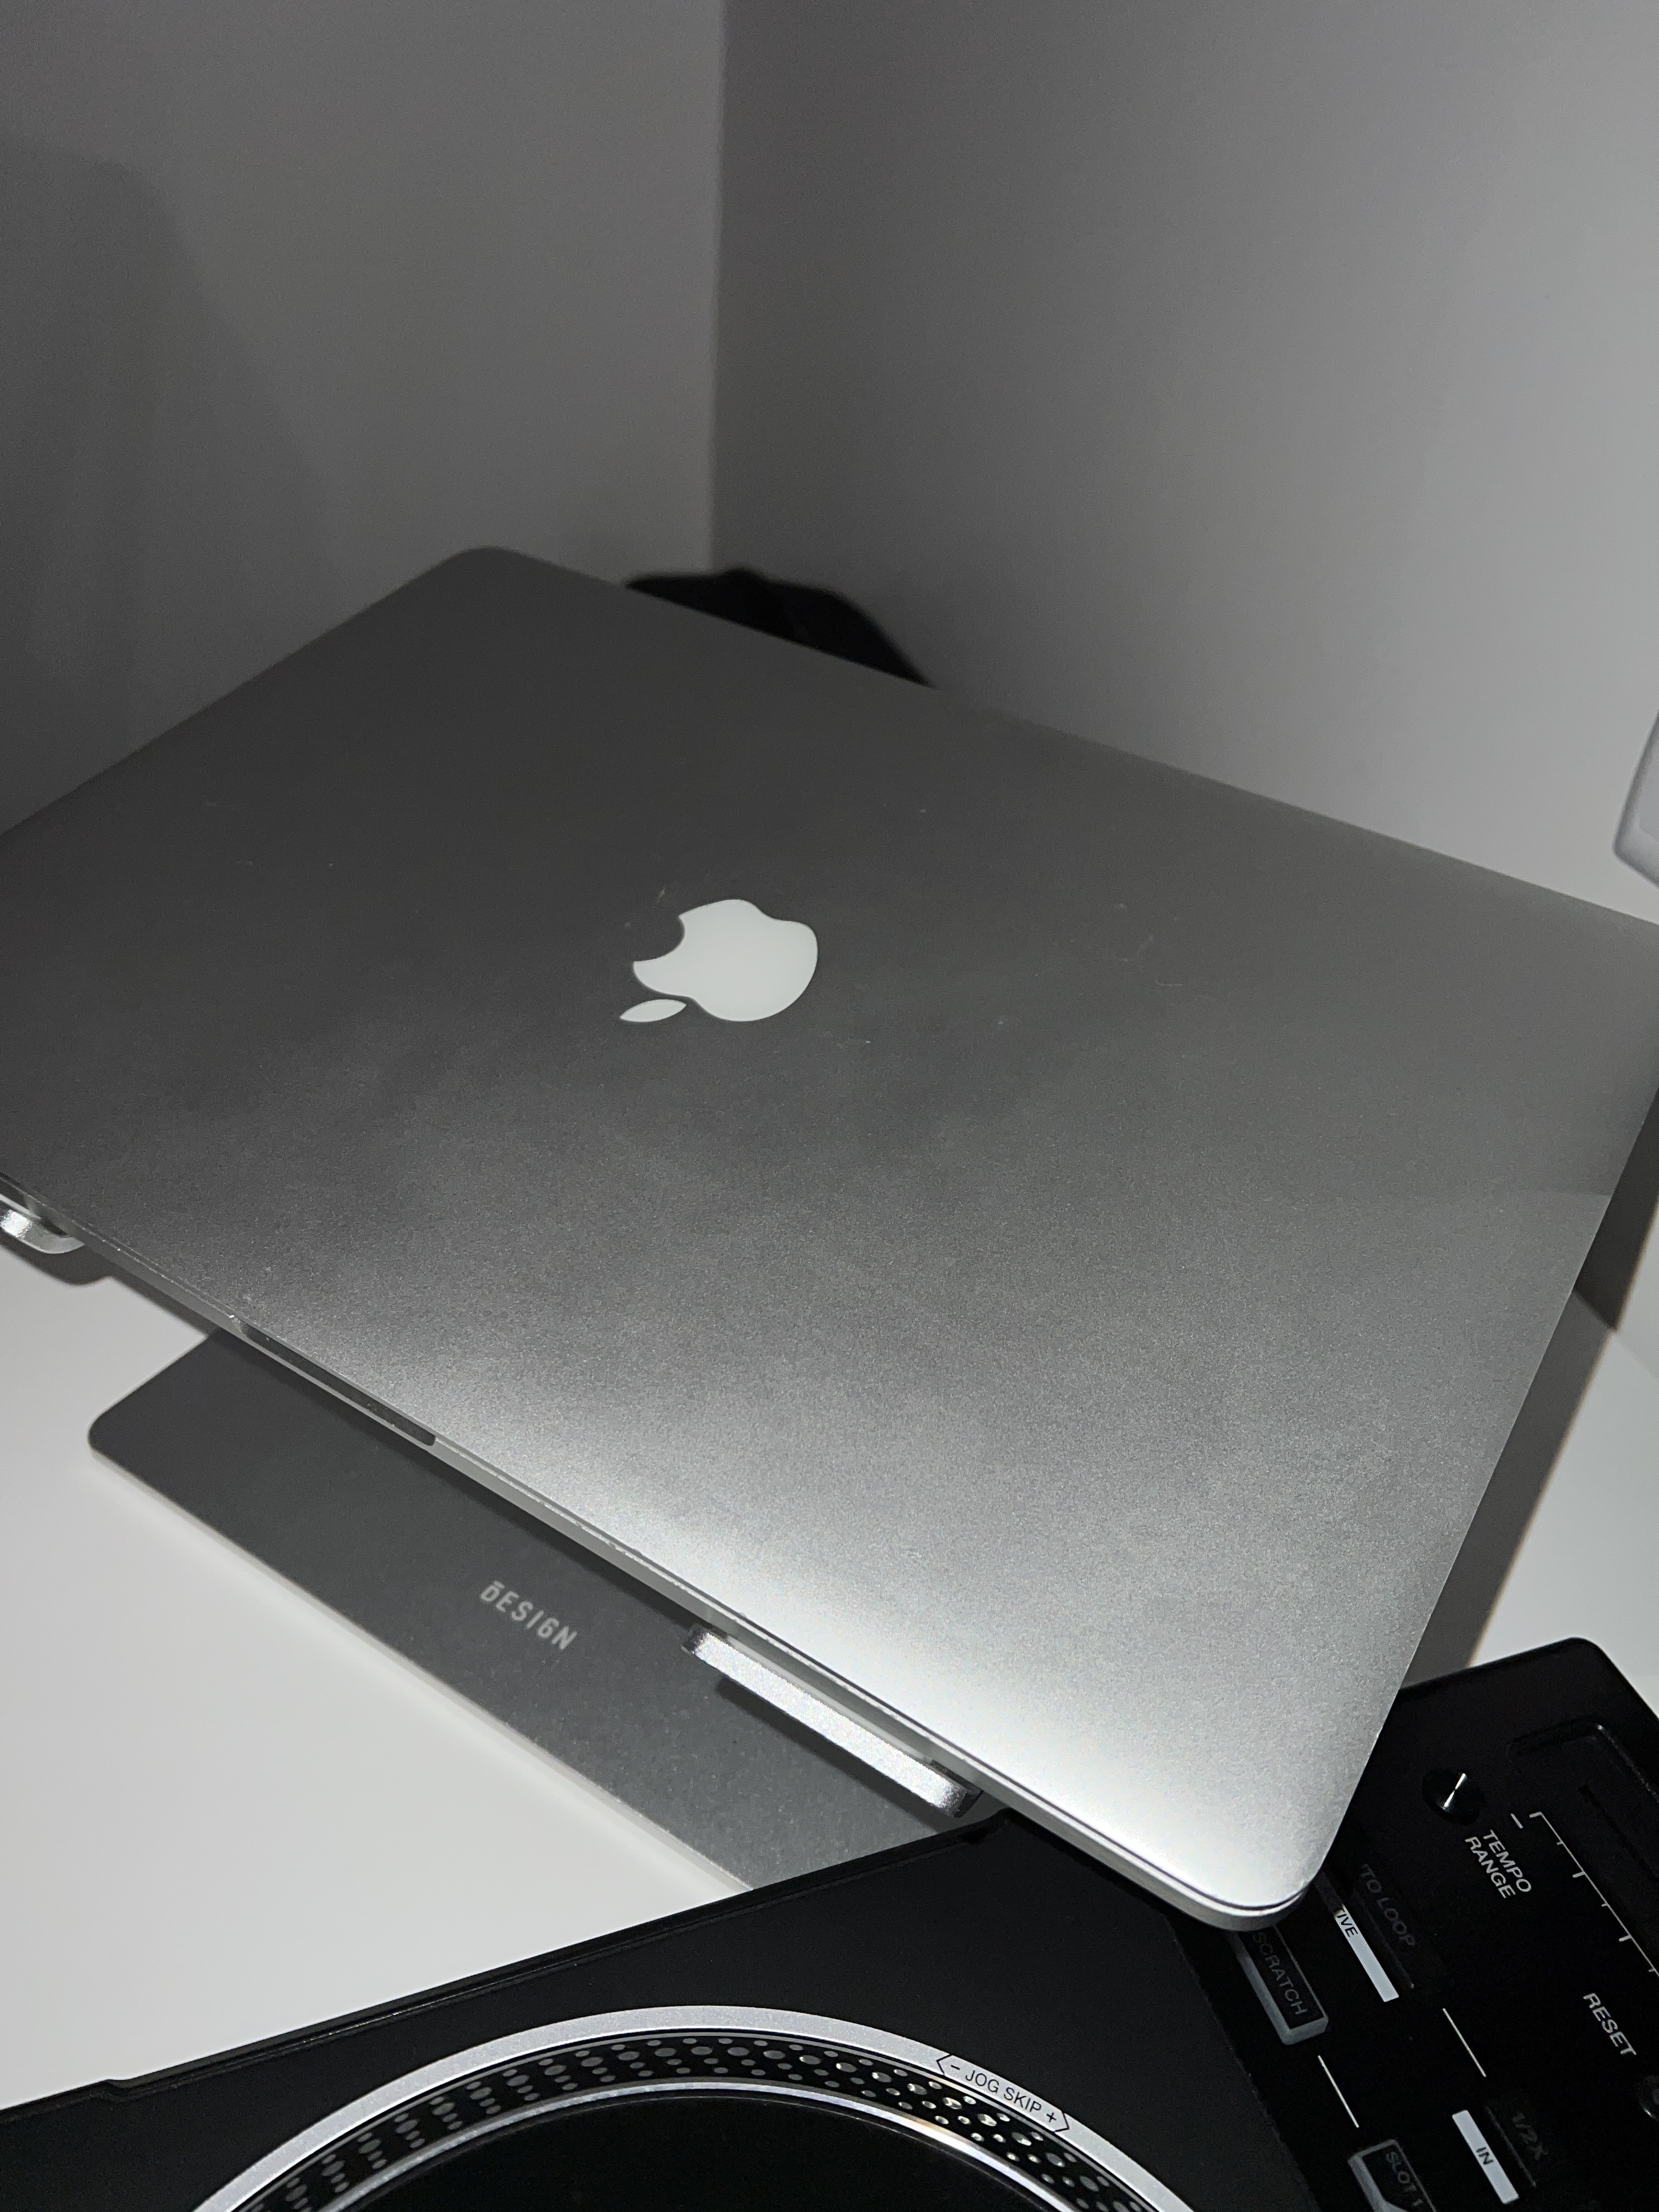 MacBook Pro (Retina, 15 pouces, mi-2015) - Caractéristiques